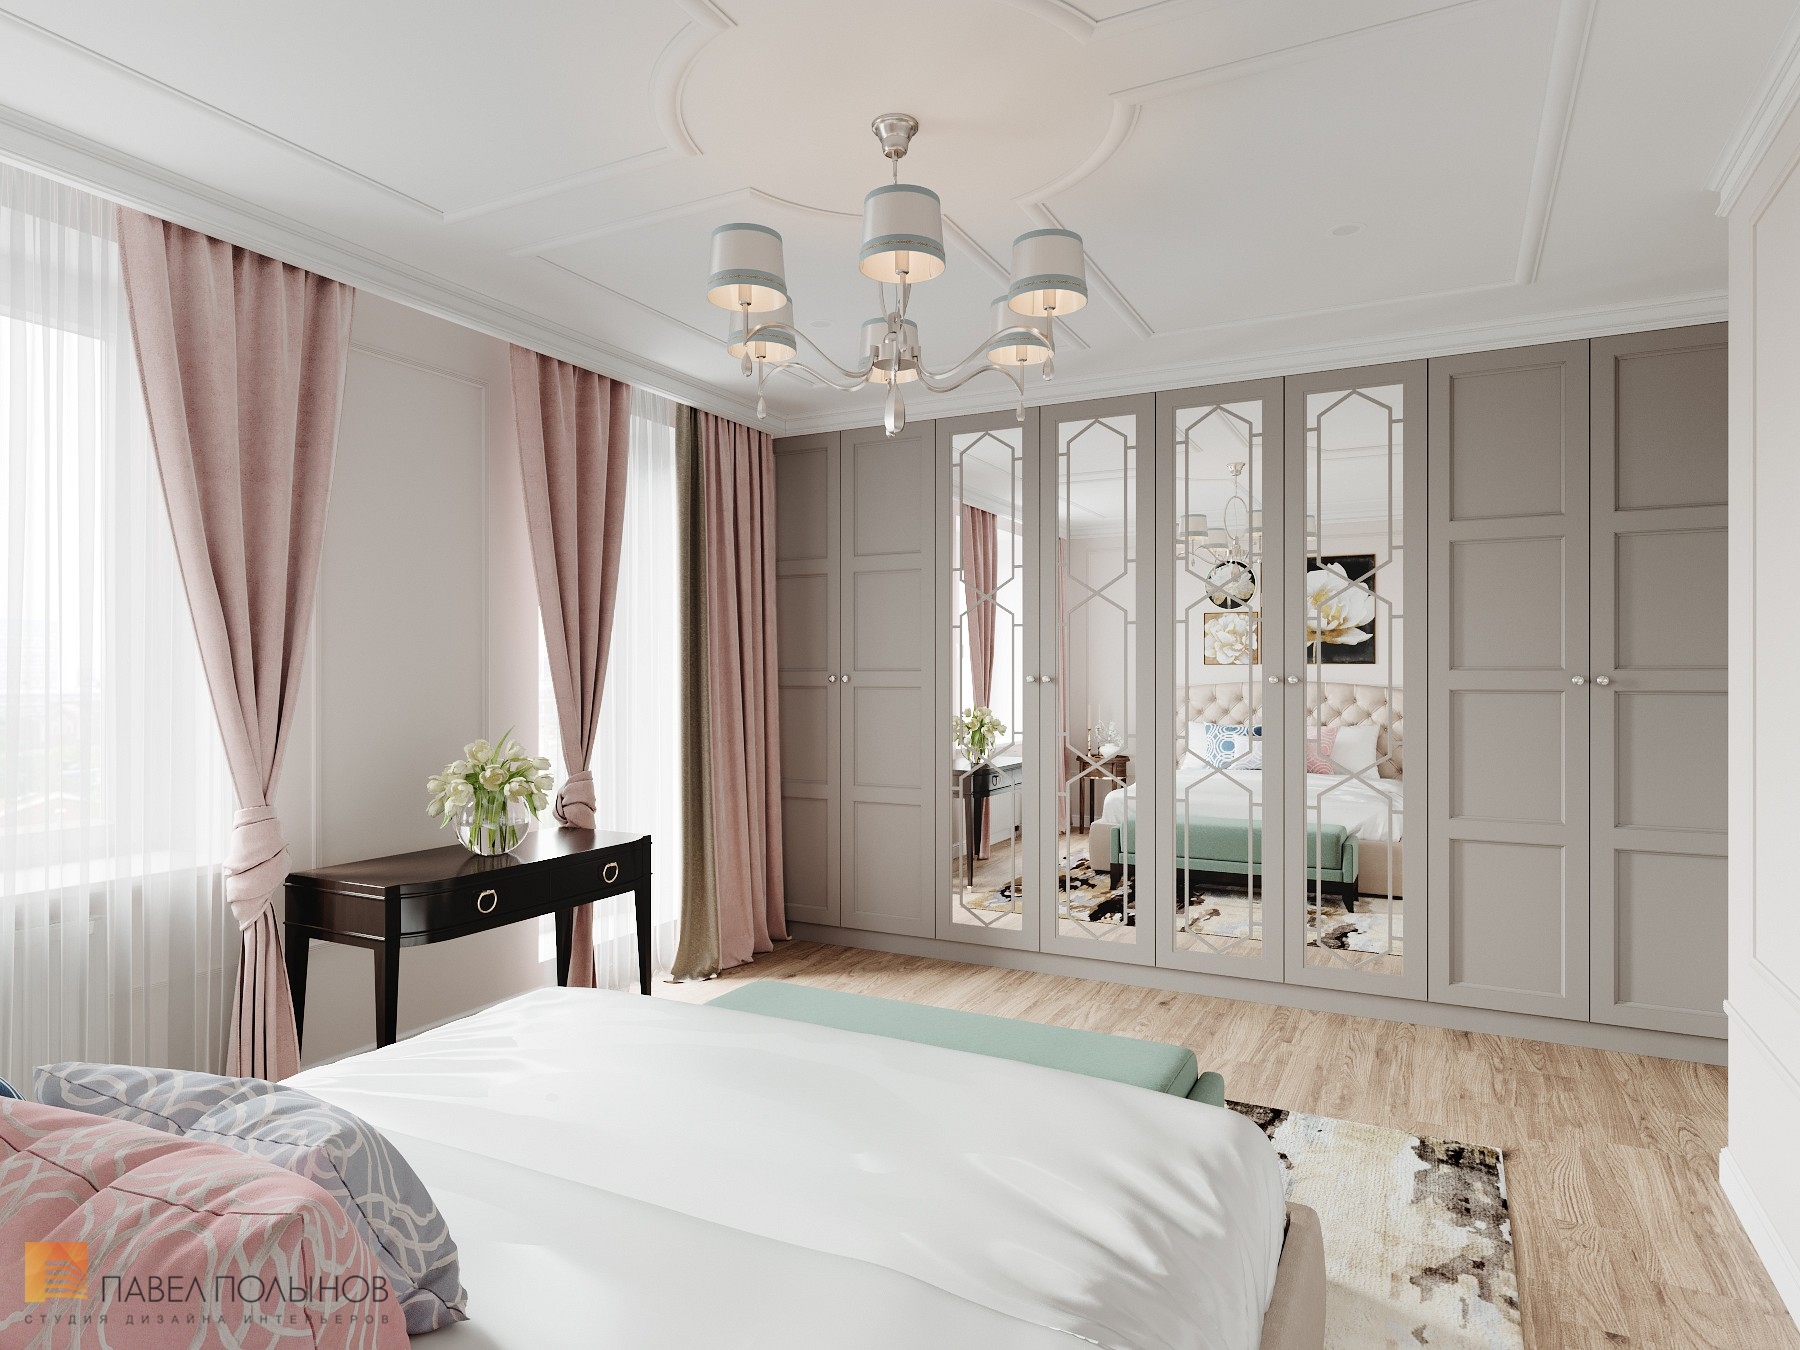 Фото дизайн интерьера спальни из проекта «Интерьер квартиры 140 кв.м. в стиле неоклассики»